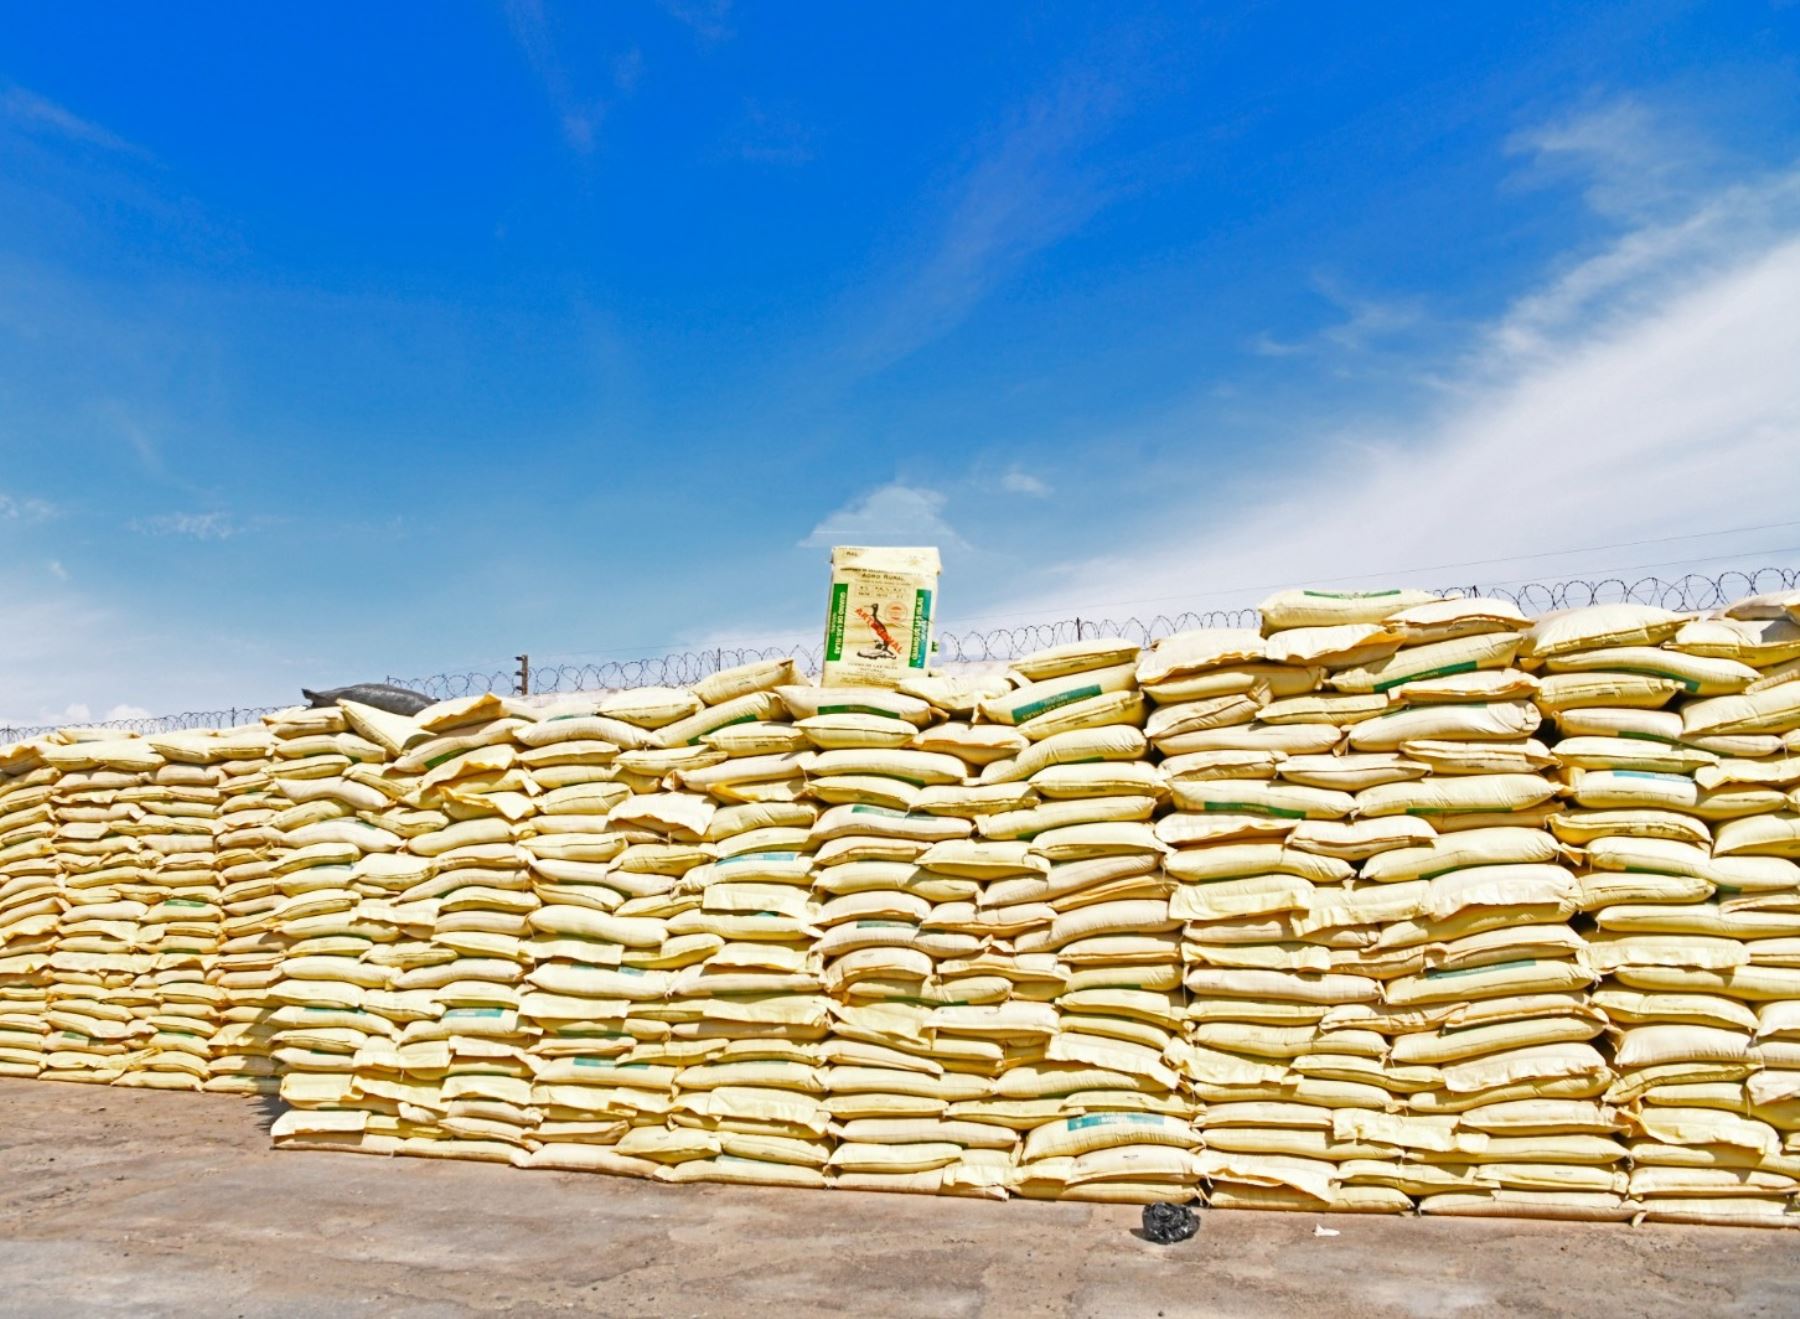 Agro Rural inició la distribución de más de 700 toneladas de guano de las islas para el desarrollo de la agricultura familiar en siete regiones. ANDINA/Difusión